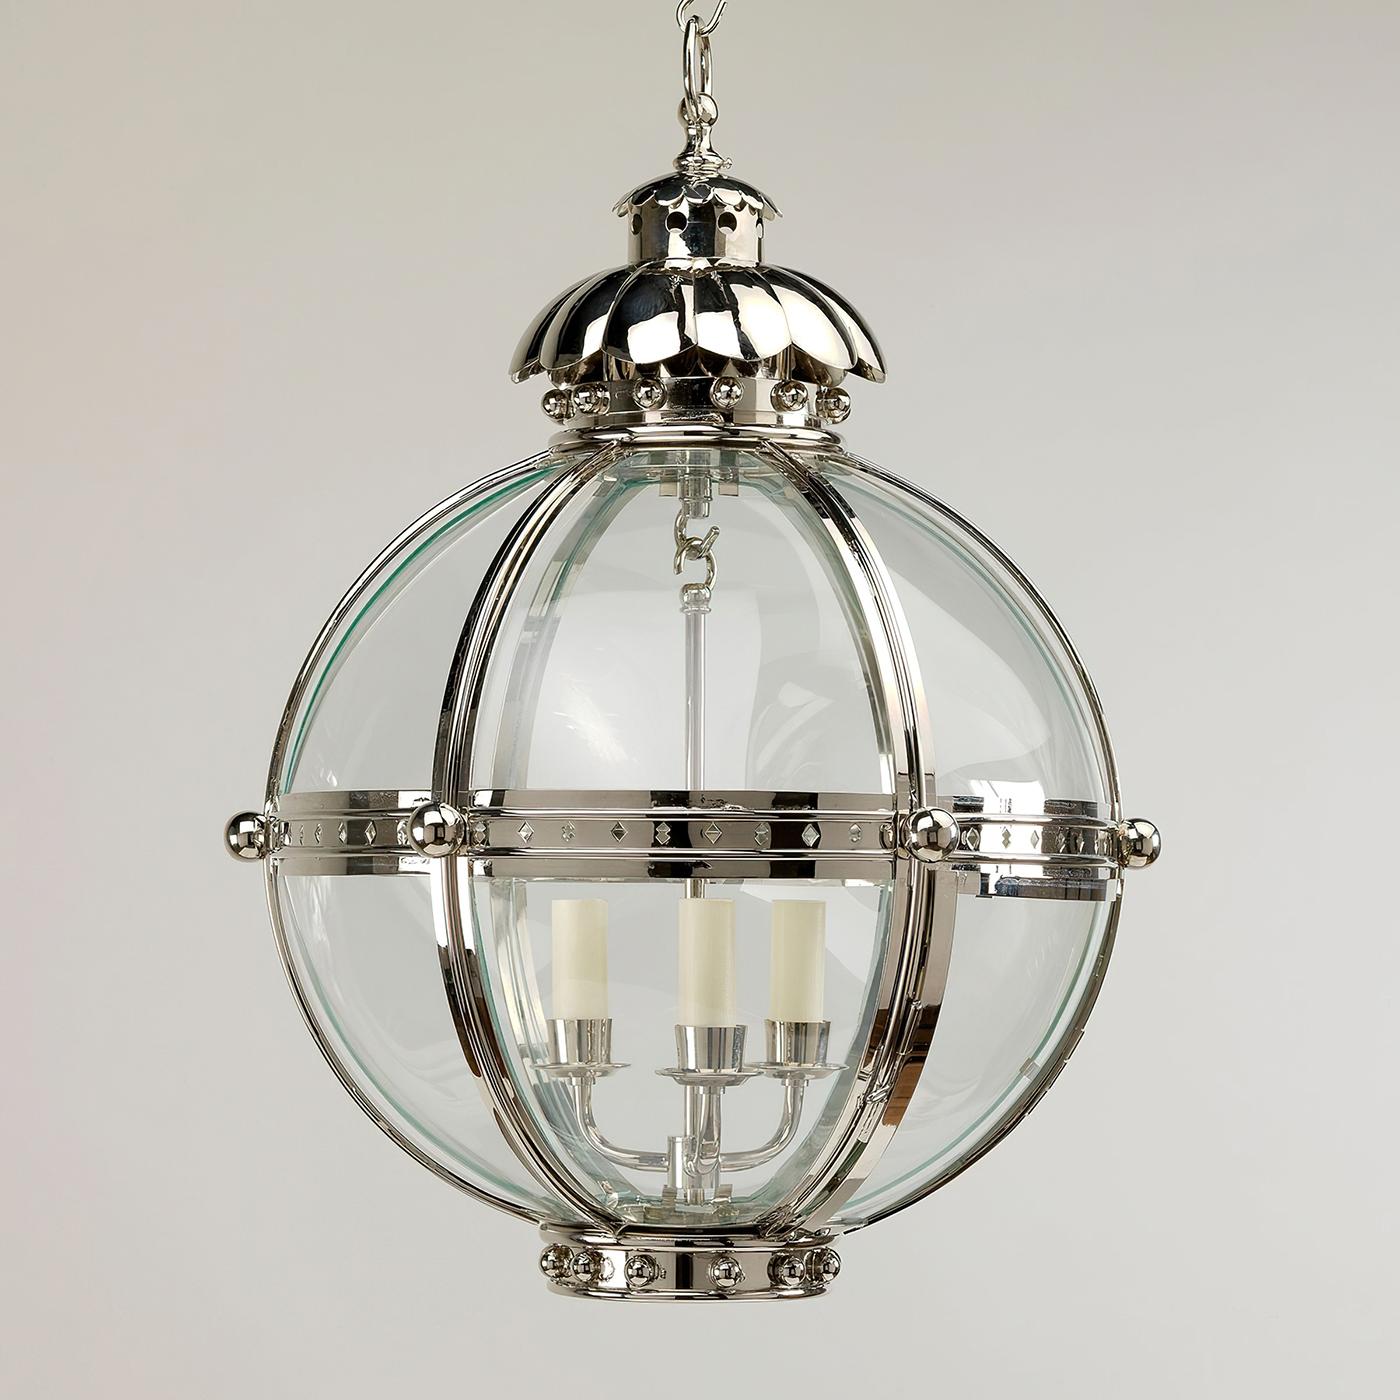 Die Globenlaterne basiert auf einer ähnlichen Antiquität aus dem 19. Jahrhundert. Die Kugelform der Leuchte strahlt Stärke aus und wird durch die vernickelten Endstücke und den Akanthusaufsatz vereinigt.

Die Laterne ist aus Messing und gebogenen